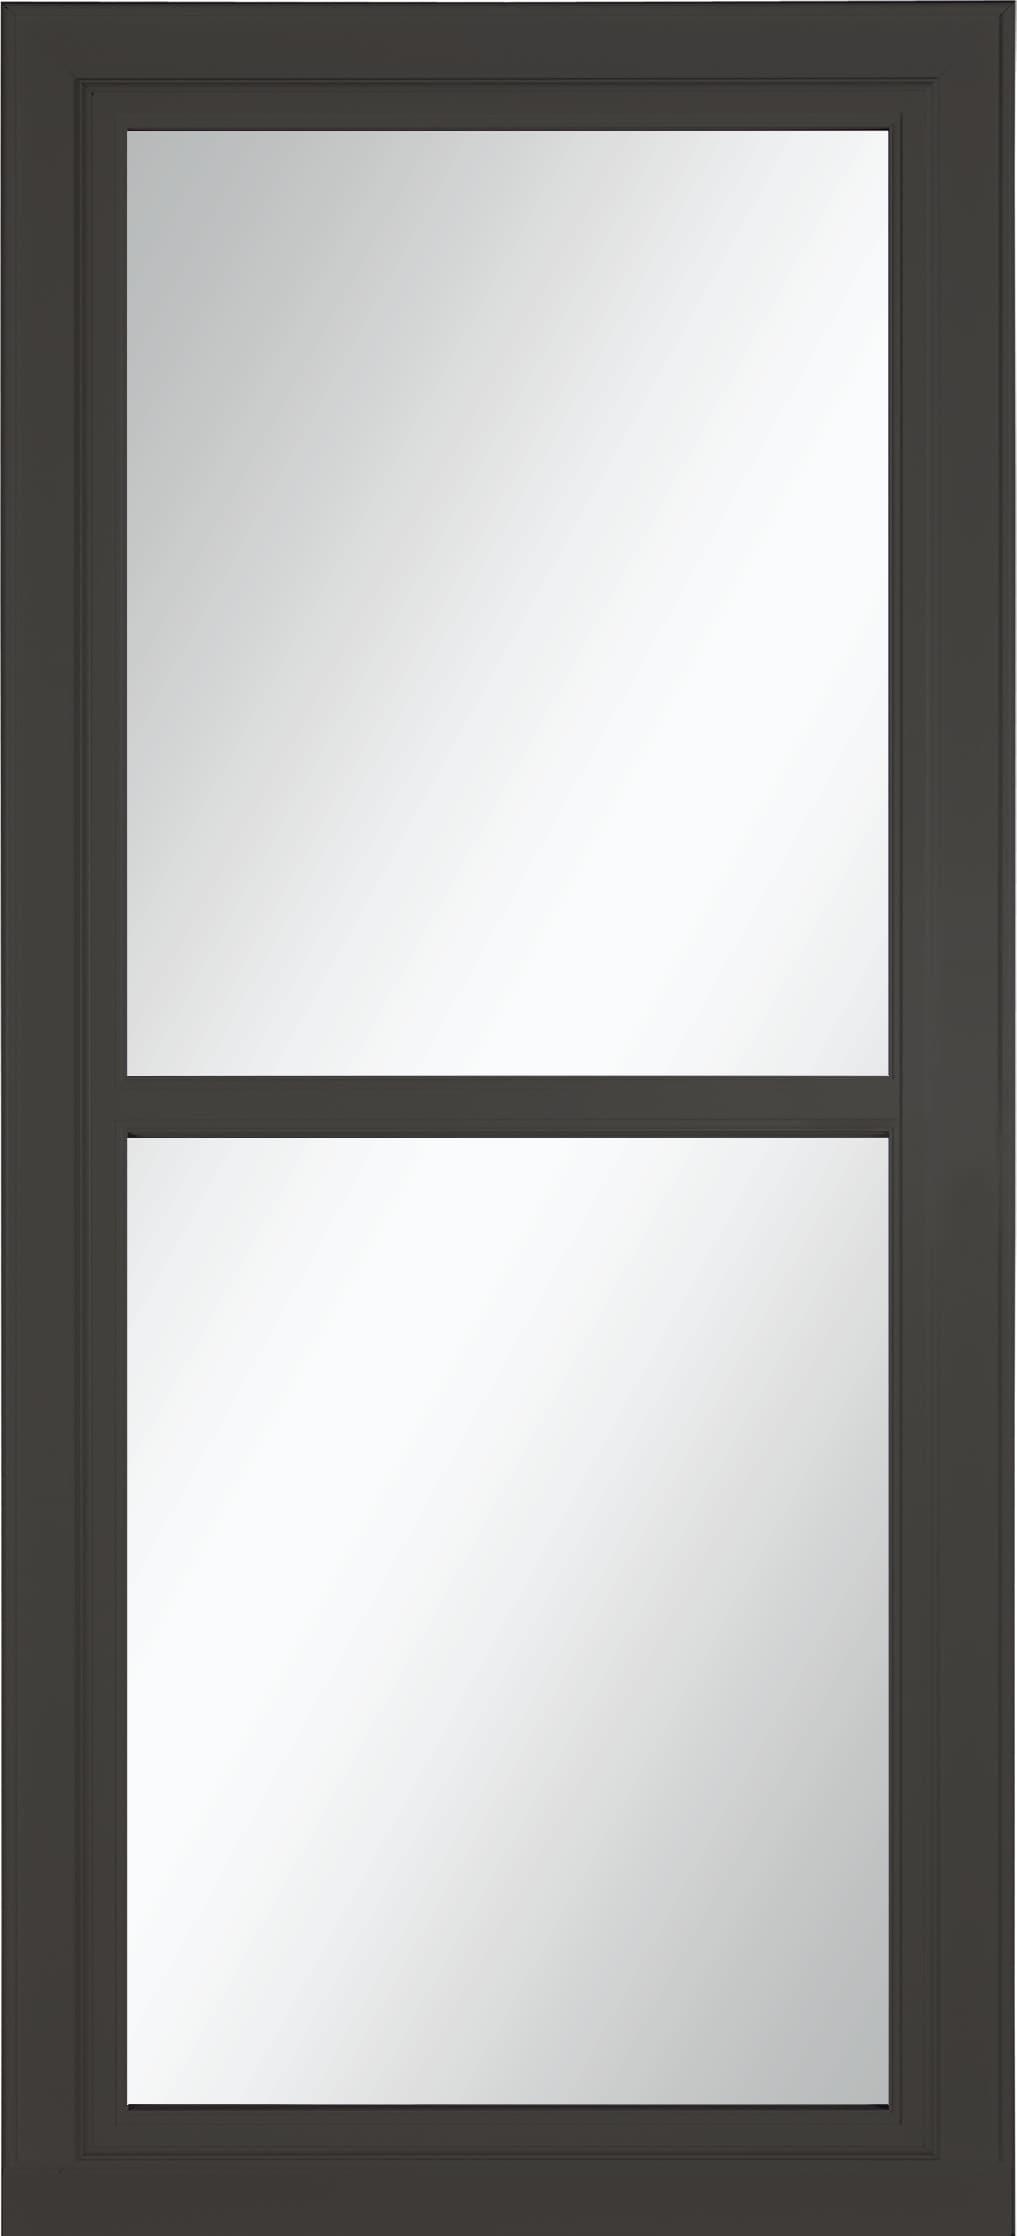 Tradewinds Selection 36-in x 81-in Peregrine Full-view Retractable Screen Aluminum Storm Door in Gray | - LARSON 14604392